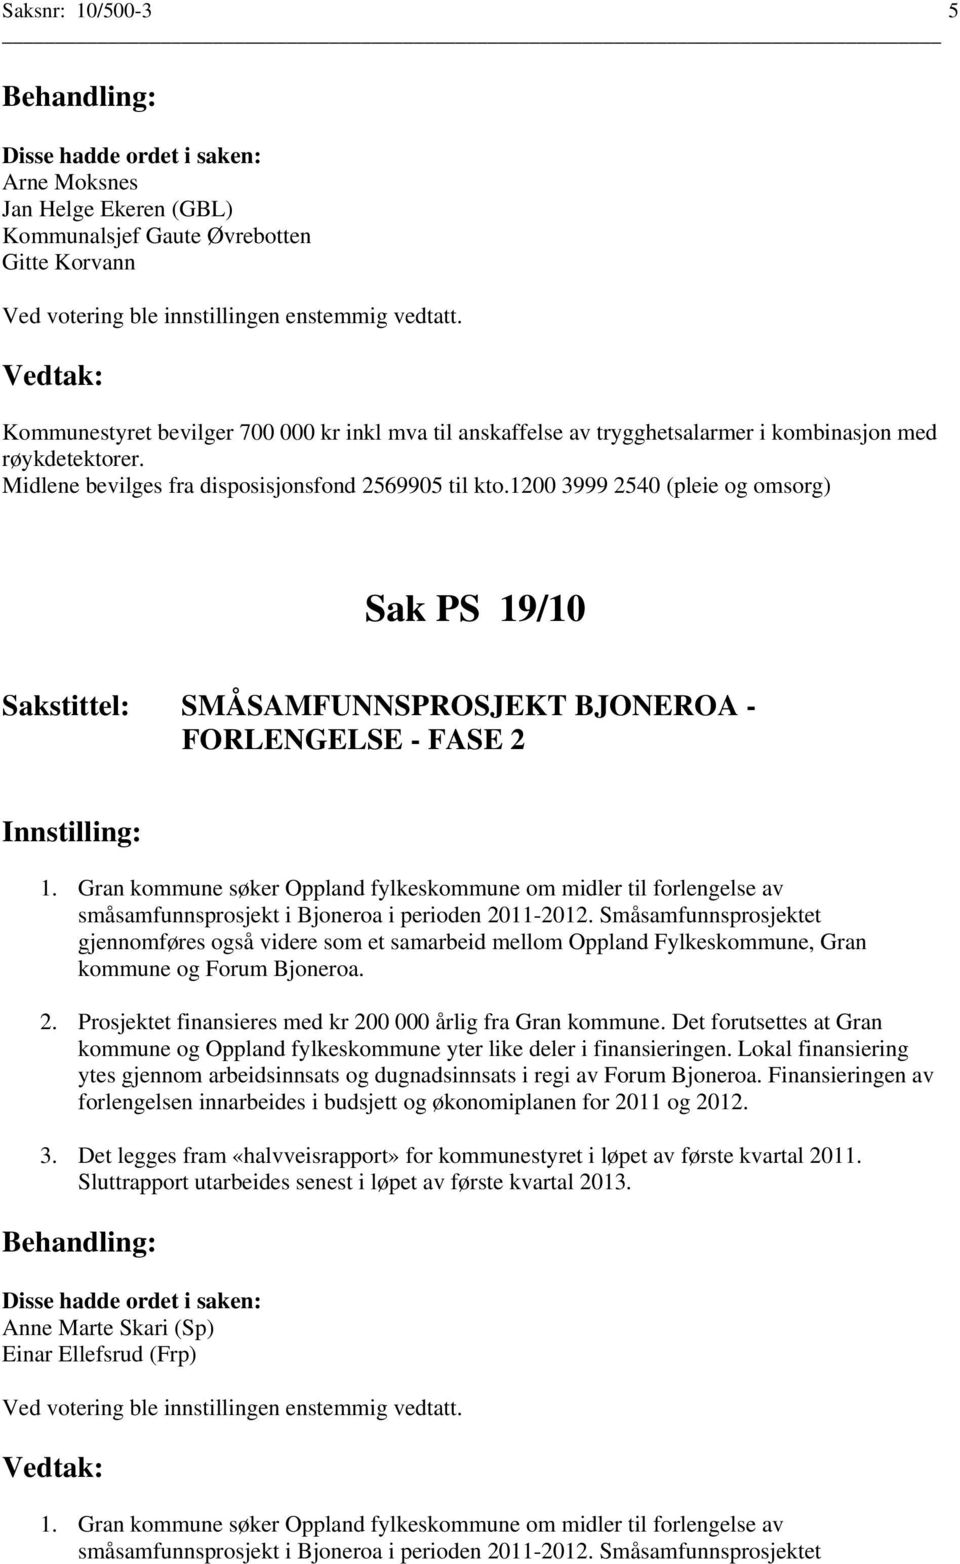 Gran kommune søker Oppland fylkeskommune om midler til forlengelse av småsamfunnsprosjekt i Bjoneroa i perioden 2011-2012.